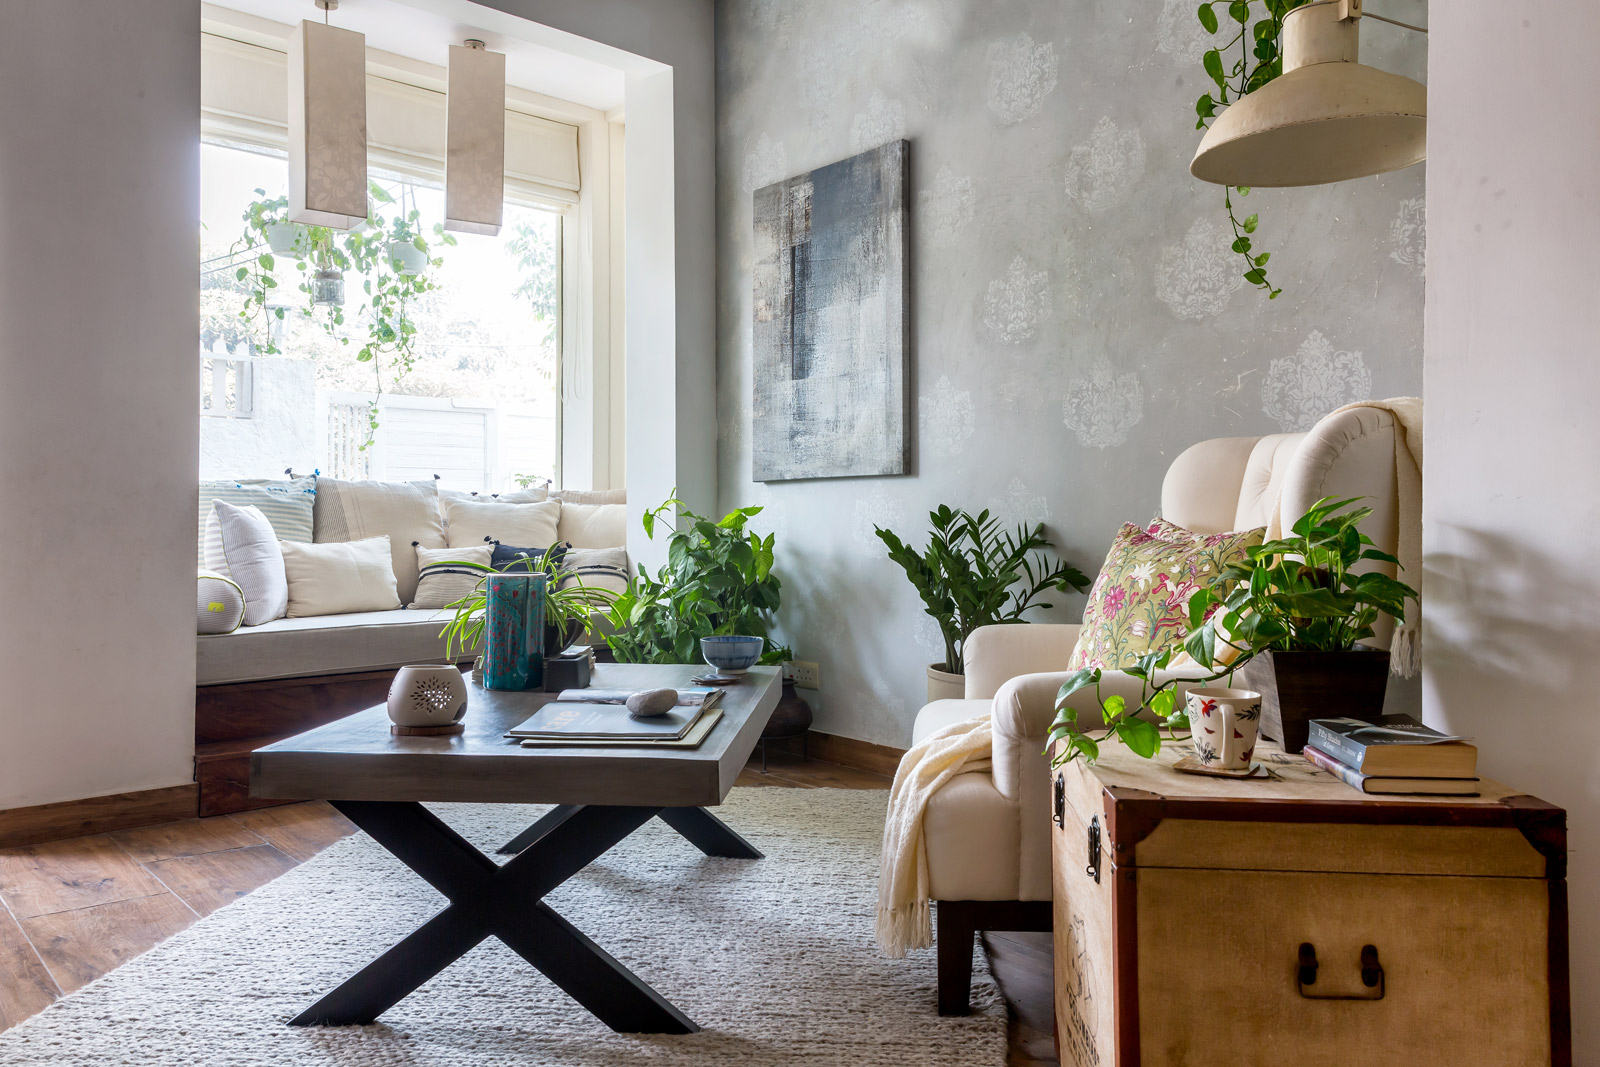 Diseño de una sala de estar: un interior acogedor